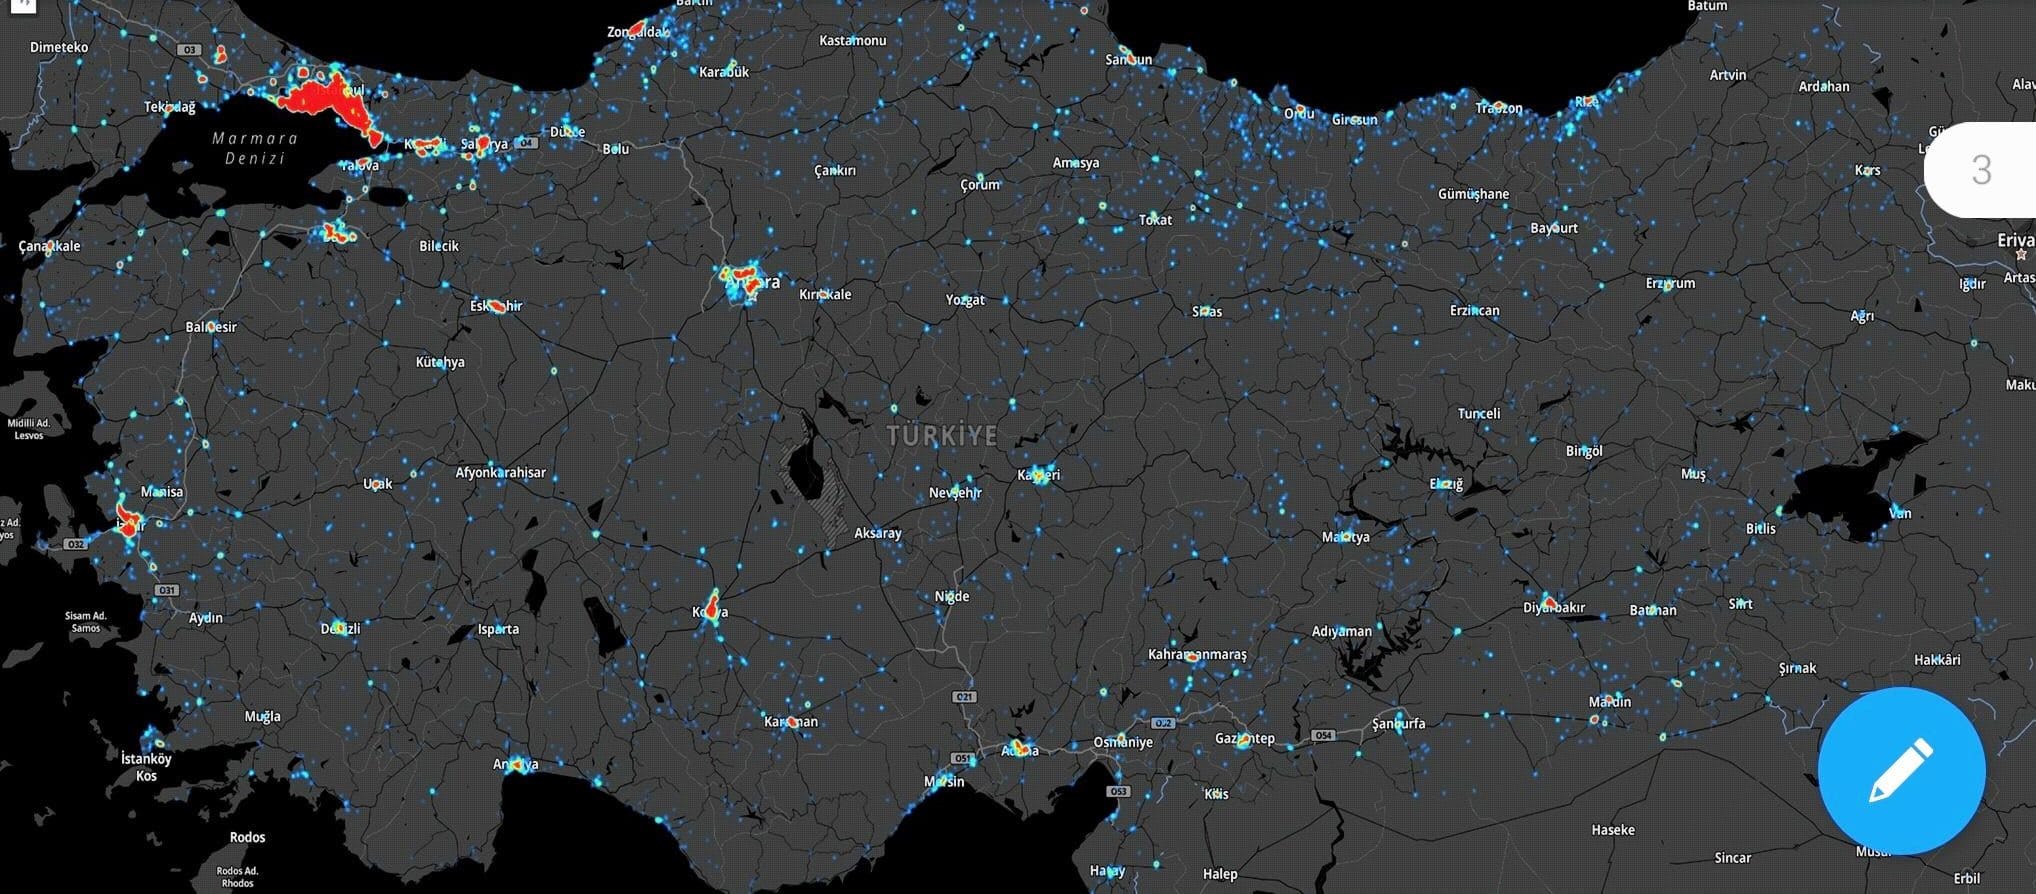 Türkiye detaylı corona virüsü yayılım haritası paylaşıldı